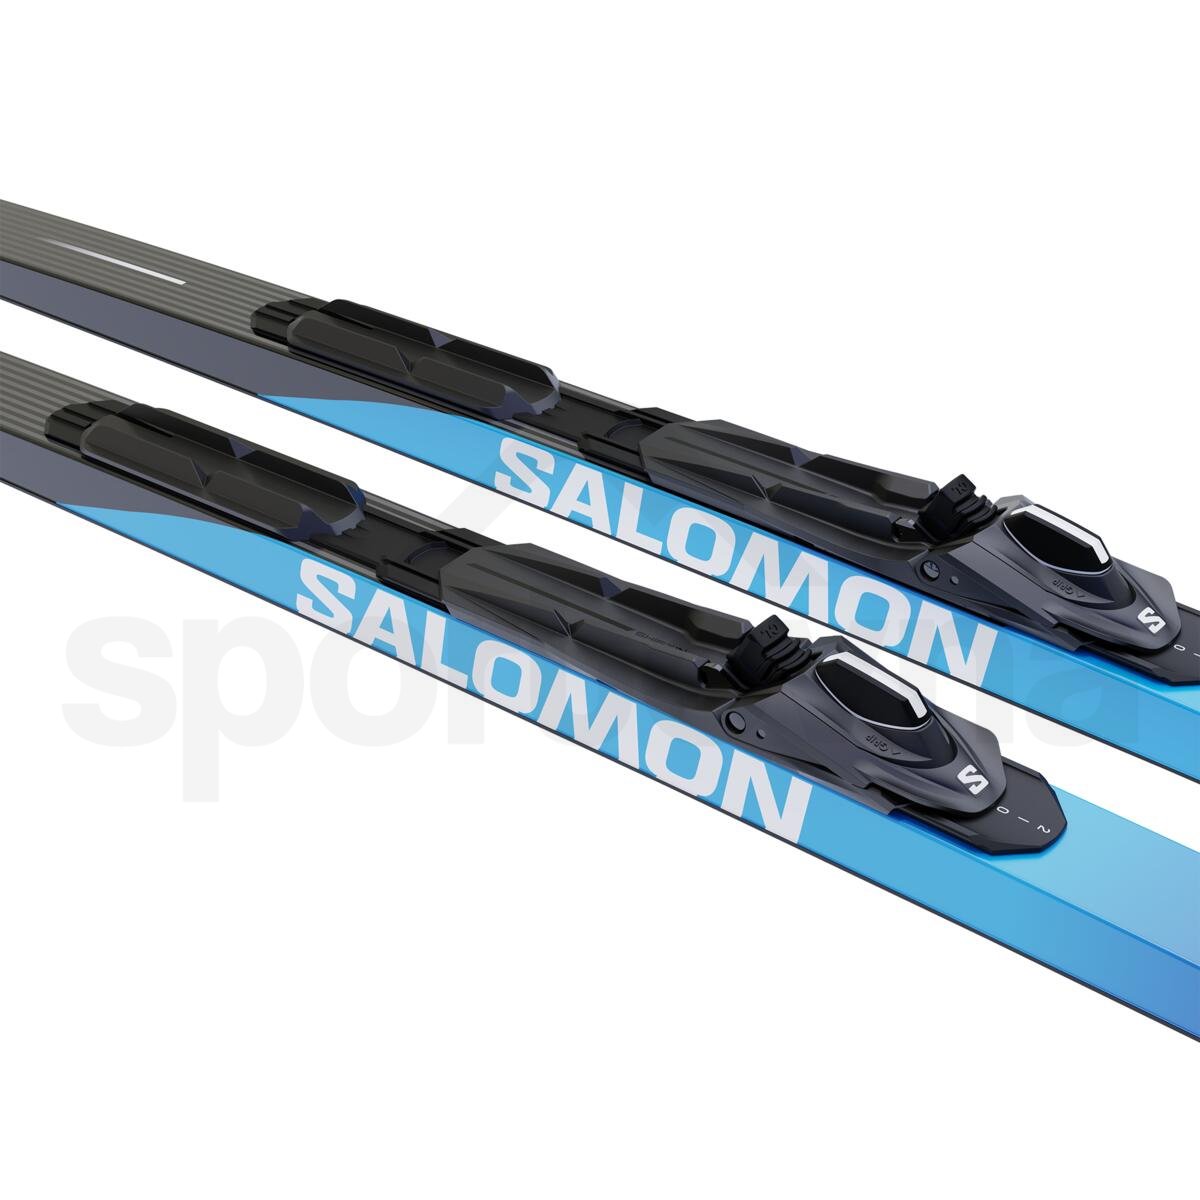 Běžky set Salomon S/MAX eSKIN Hard + Vázání SHIFT-IN BDG Uni - modrá/černá